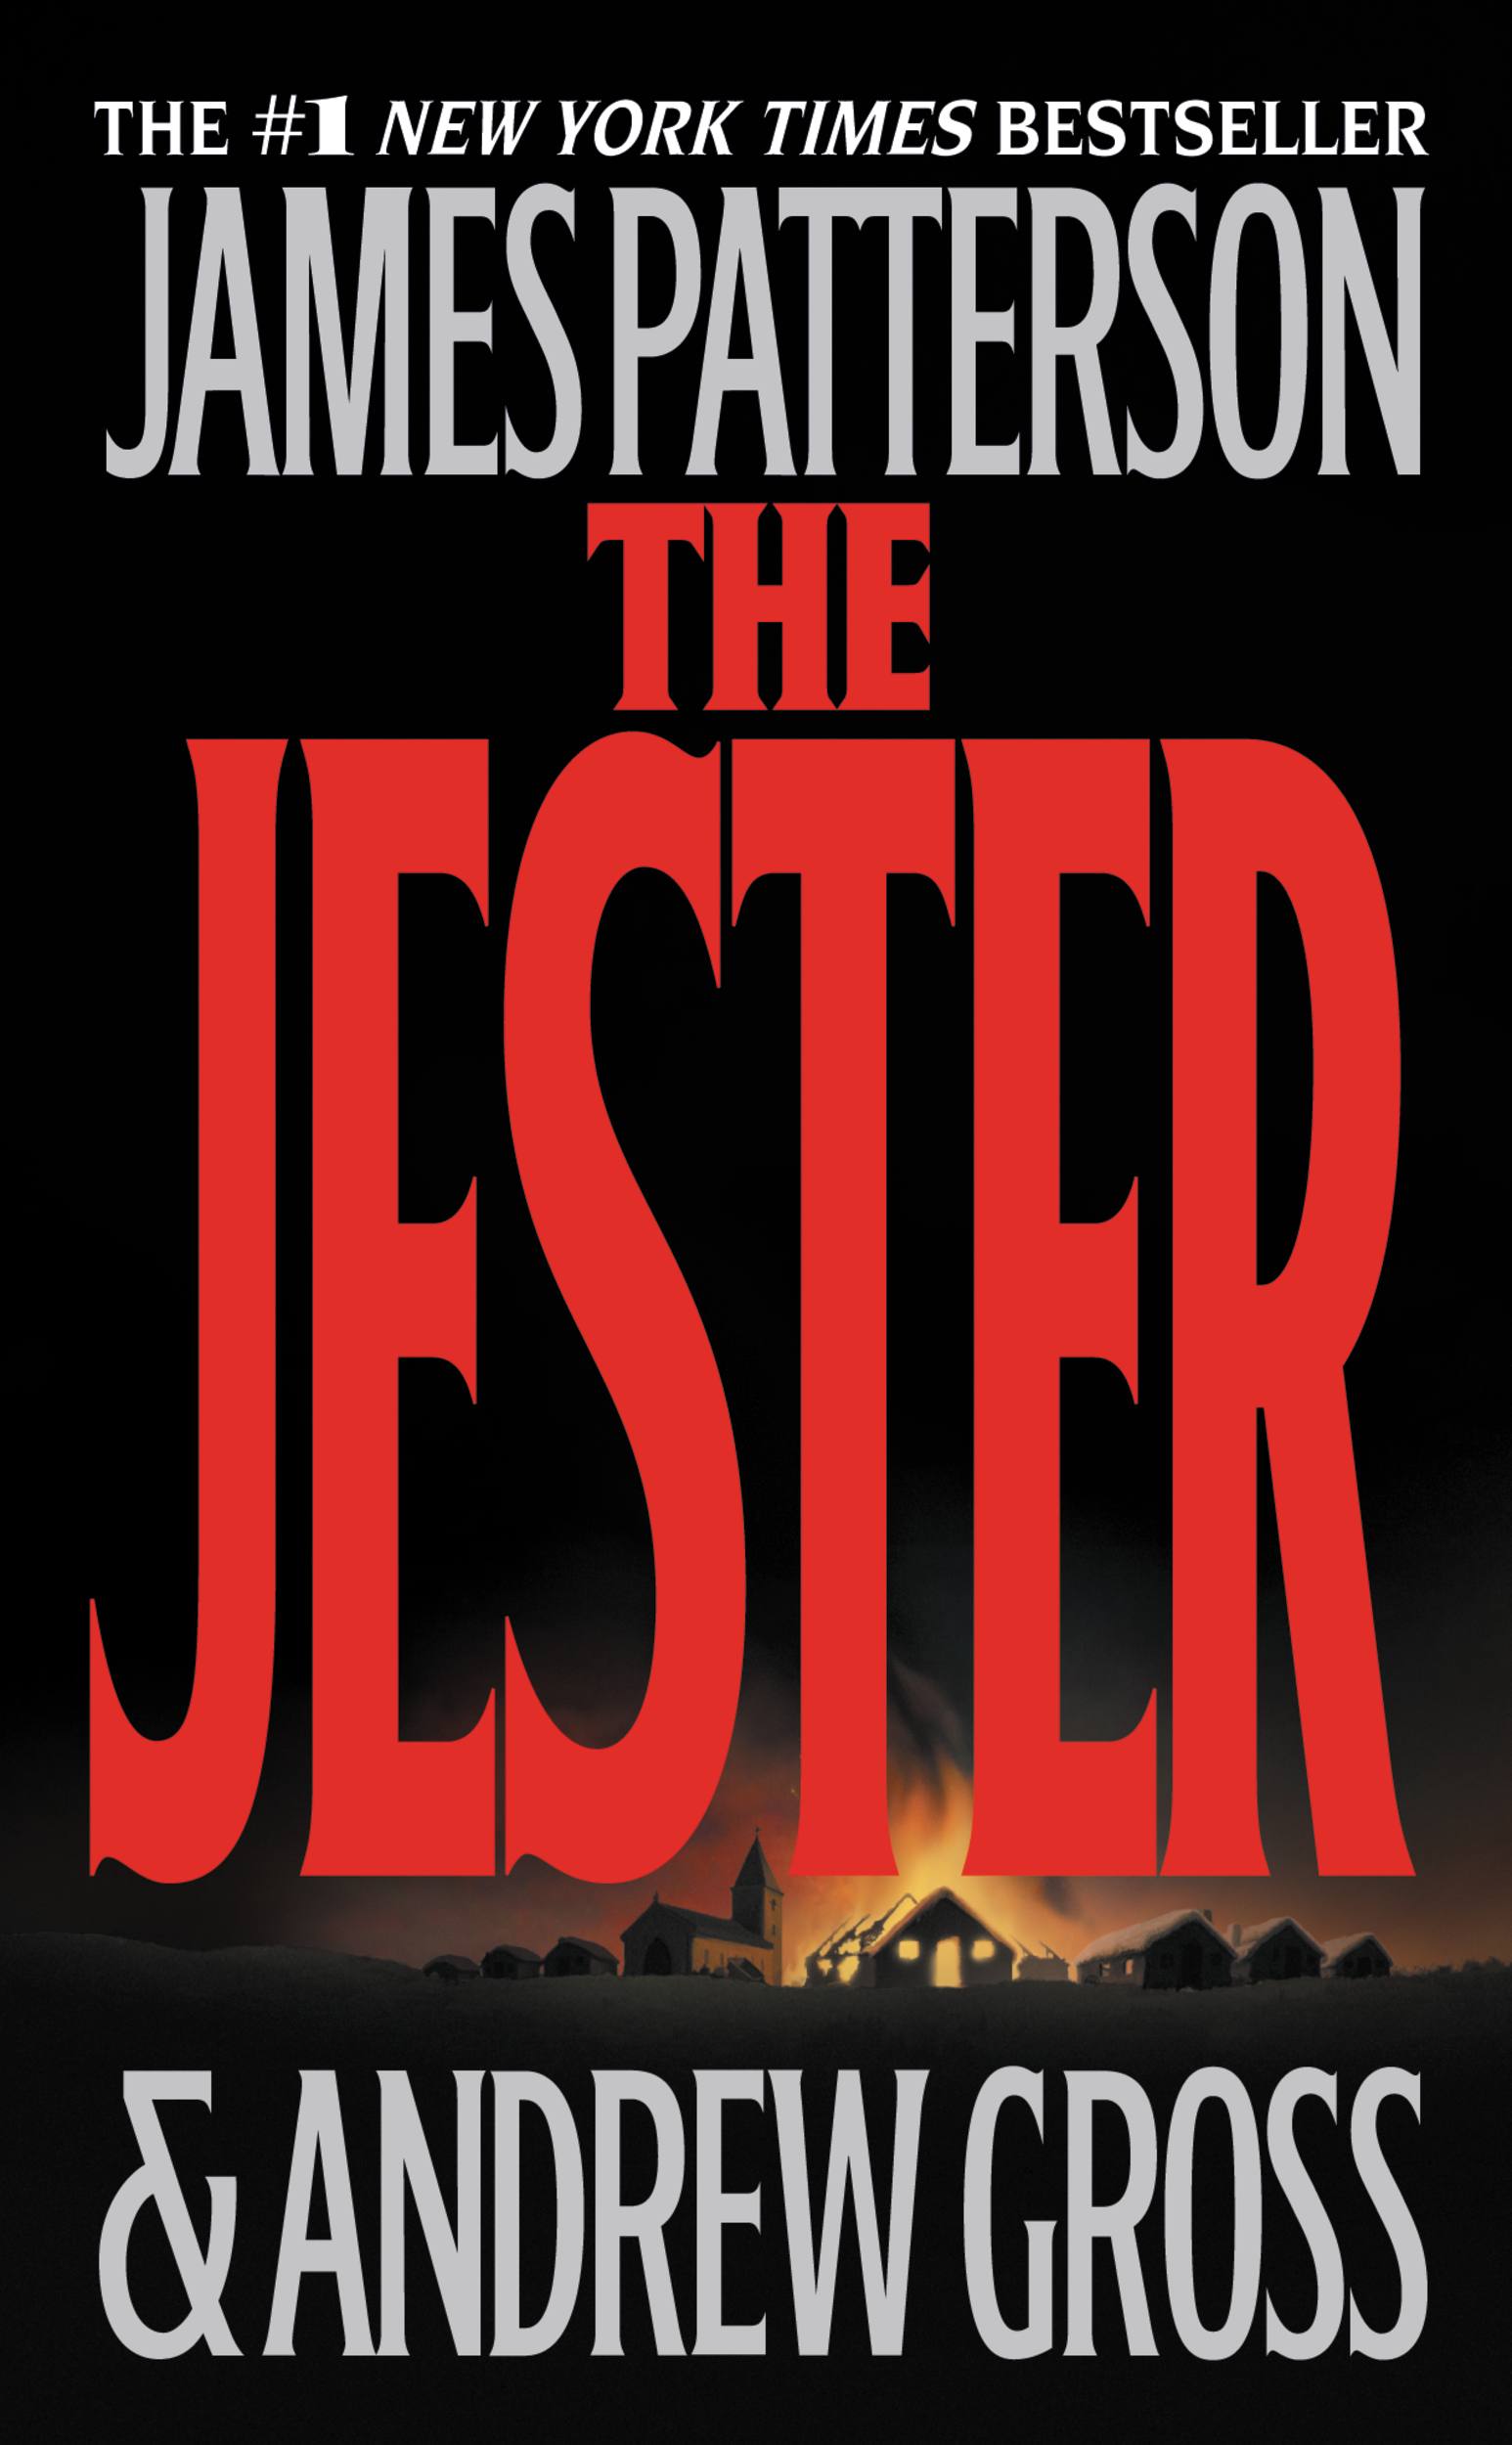 Image de couverture de The Jester [electronic resource] :